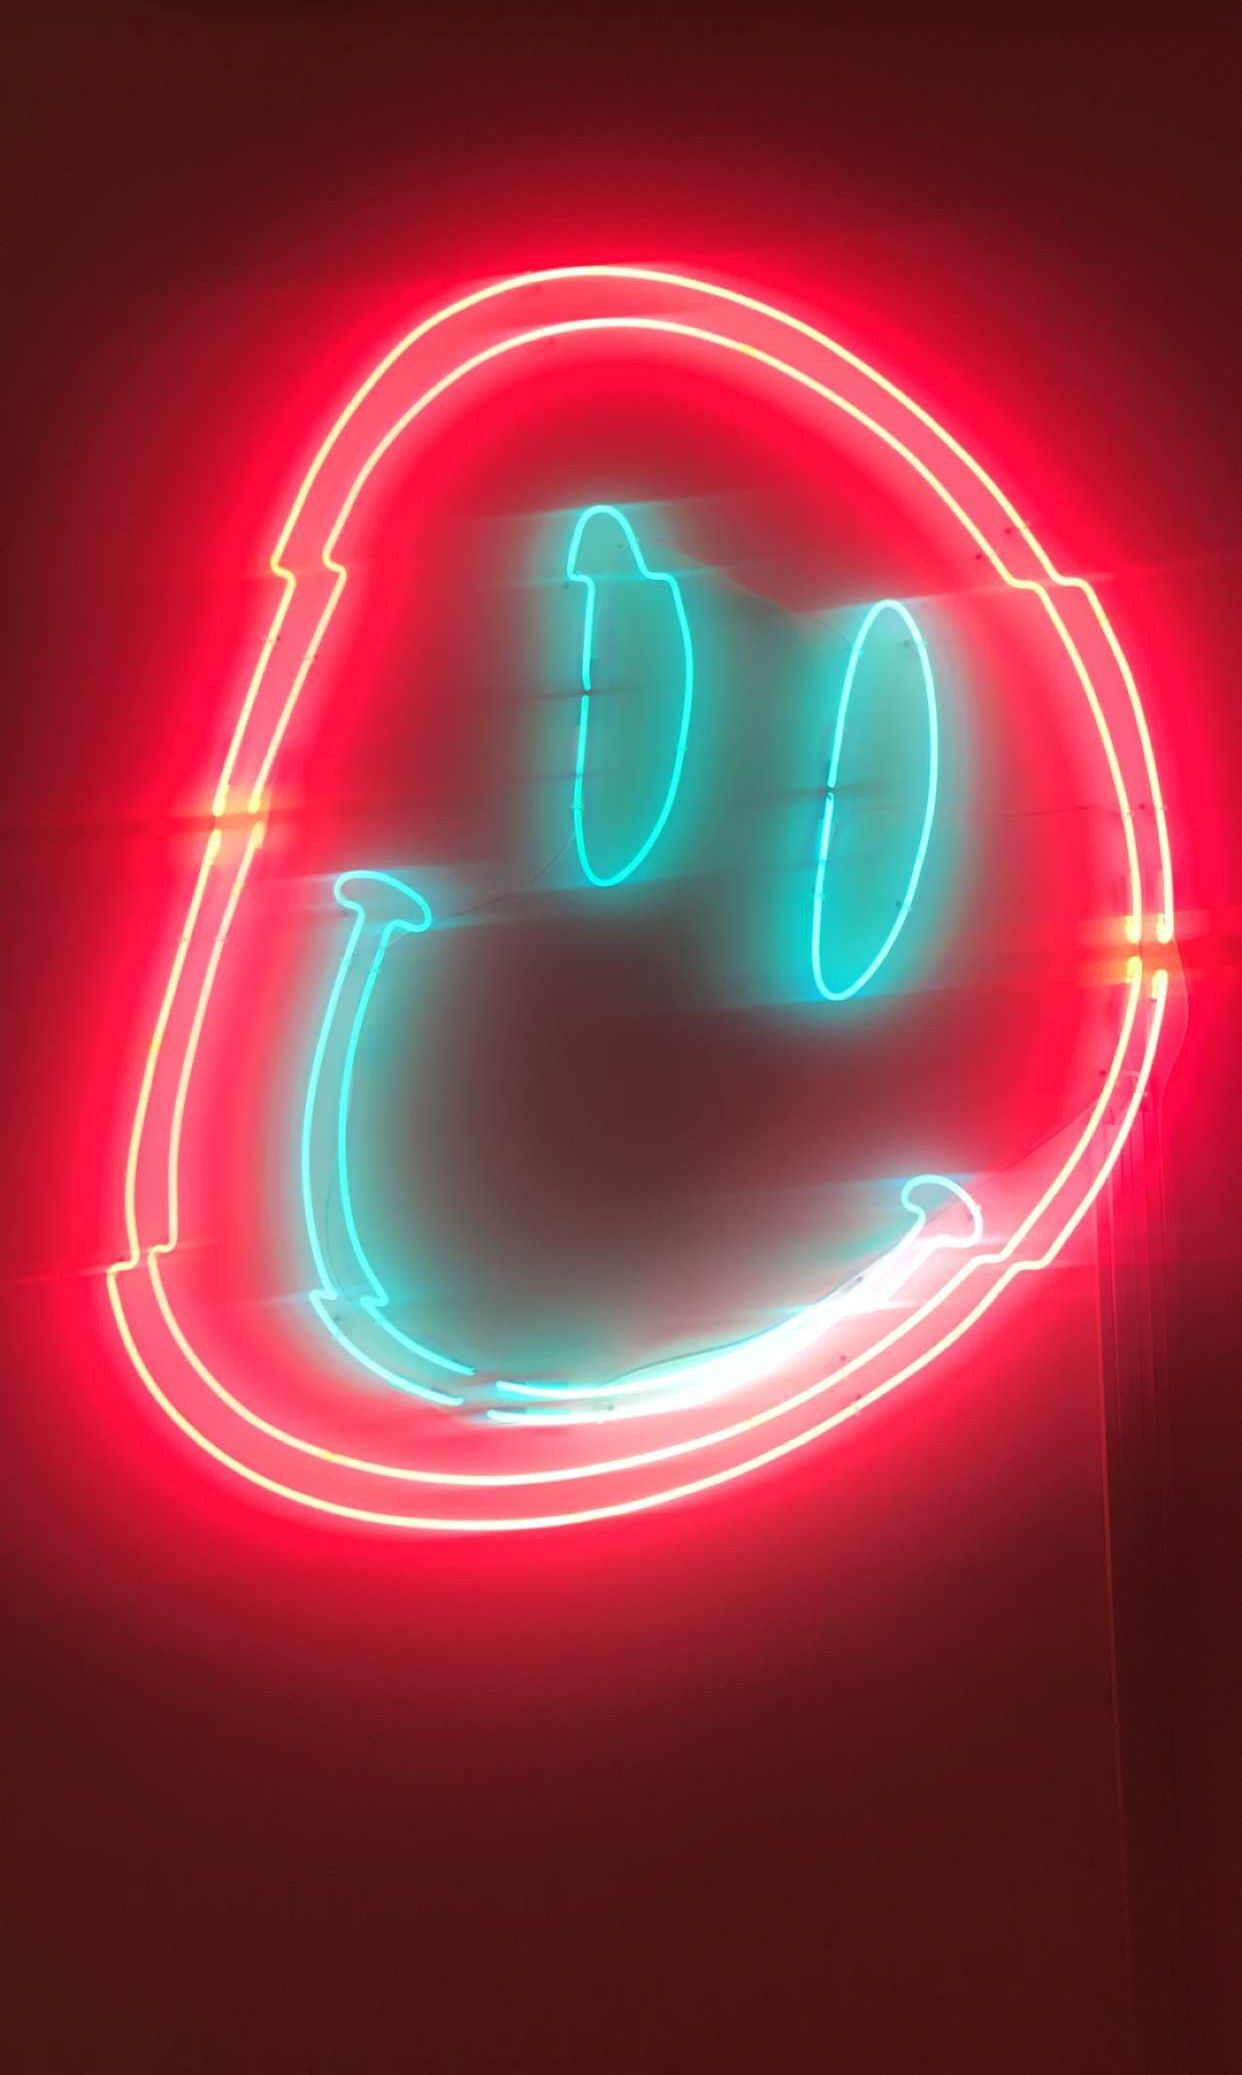 Neon smiley face iPhone wallpaper. Fun